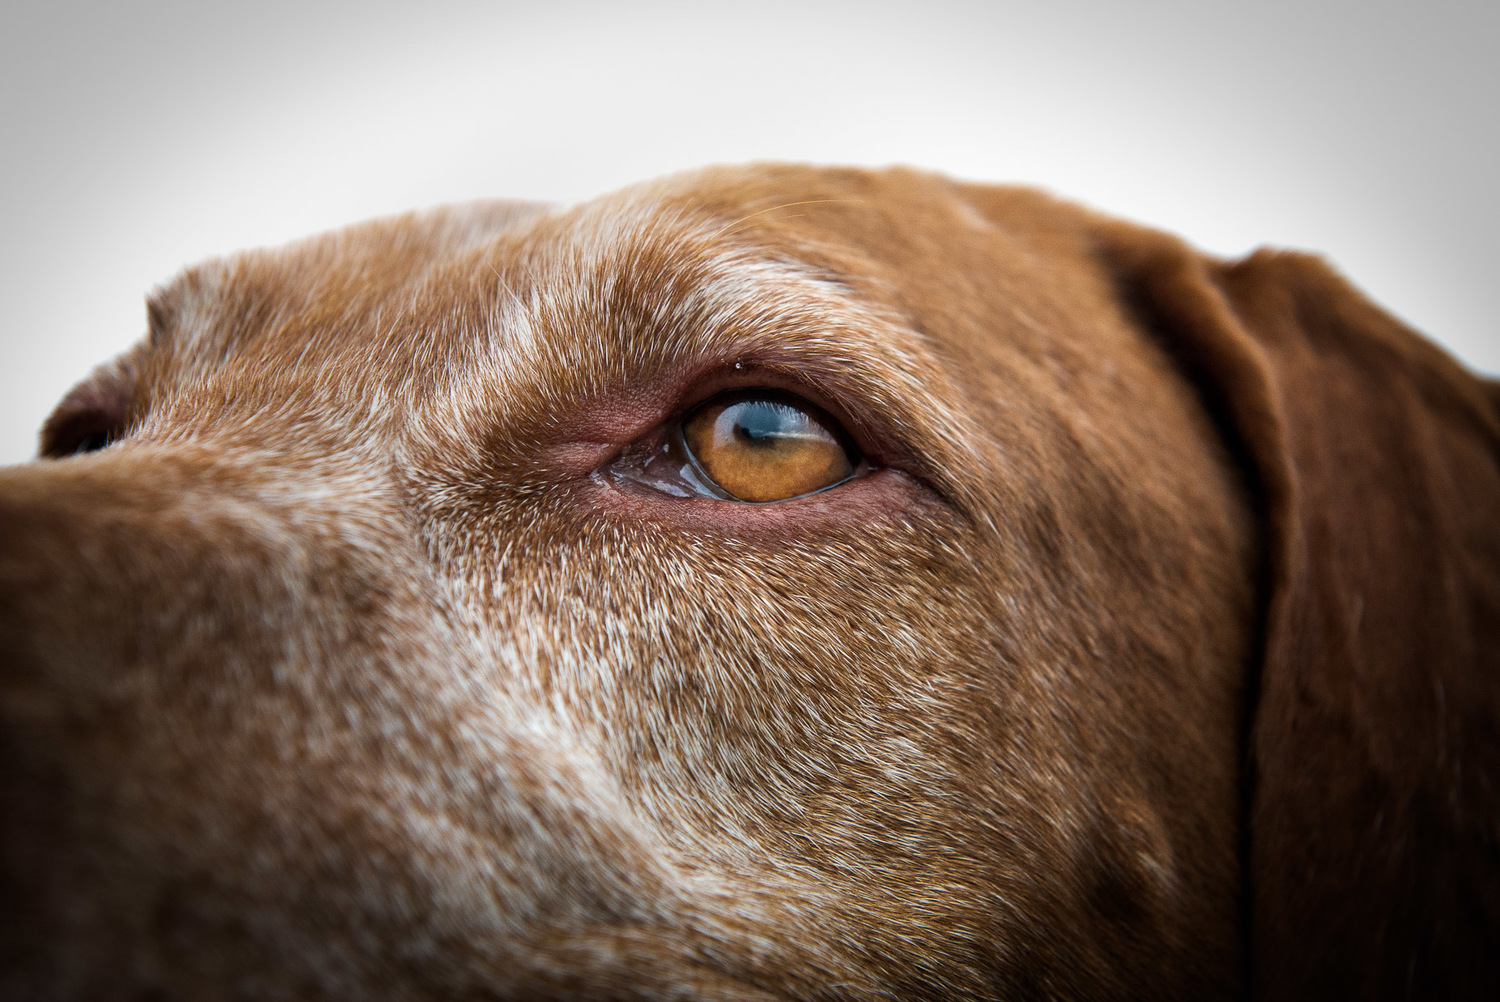 close-up-eye-viszla-breed-dog-photography.jpg